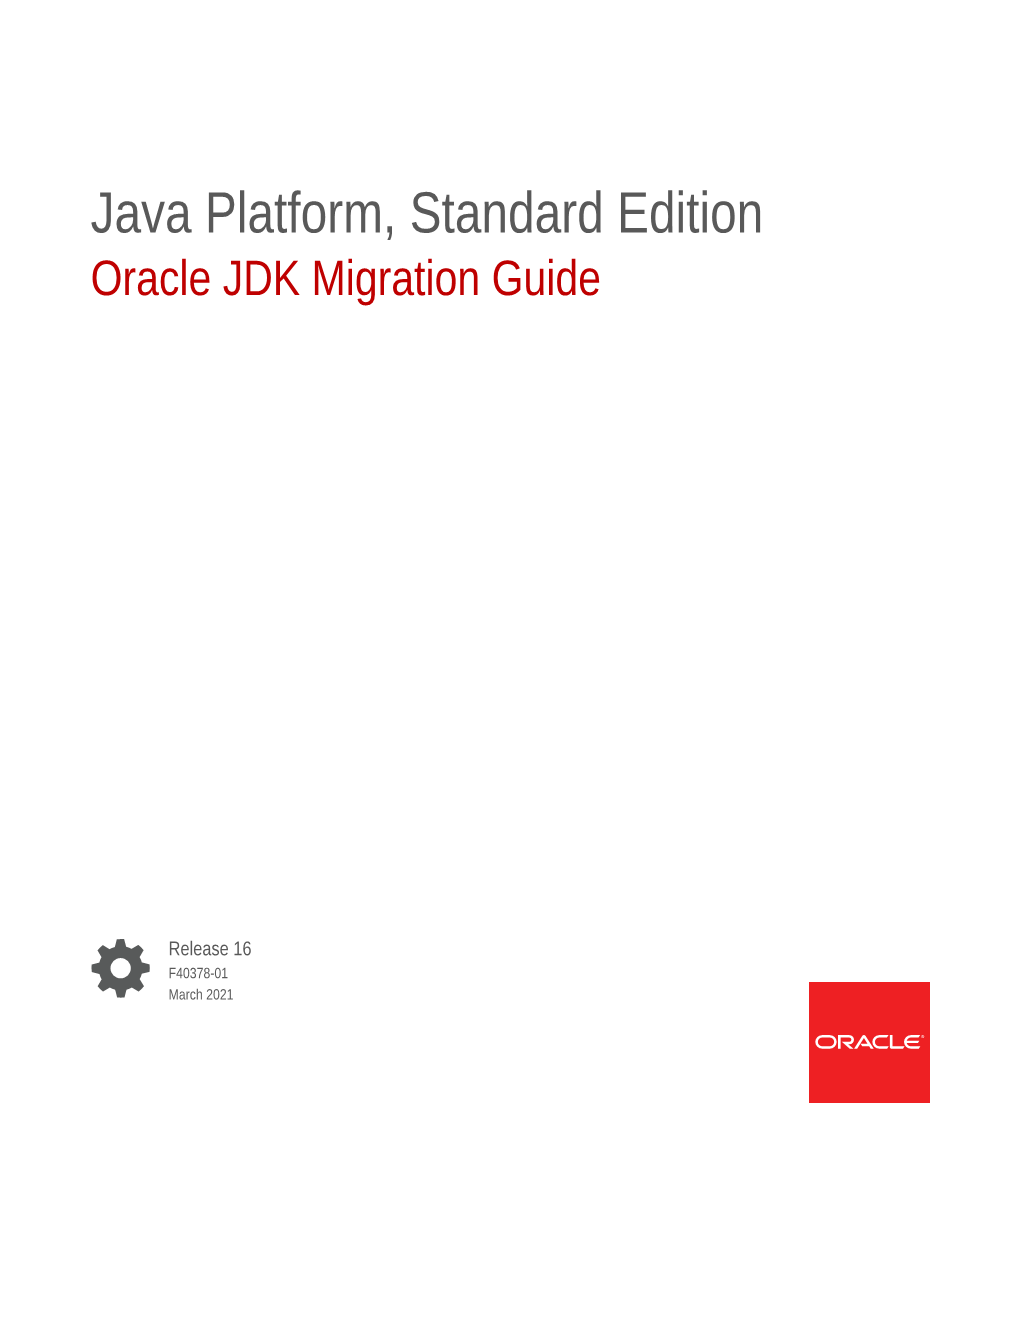 Java Platform, Standard Edition Oracle JDK Migration Guide